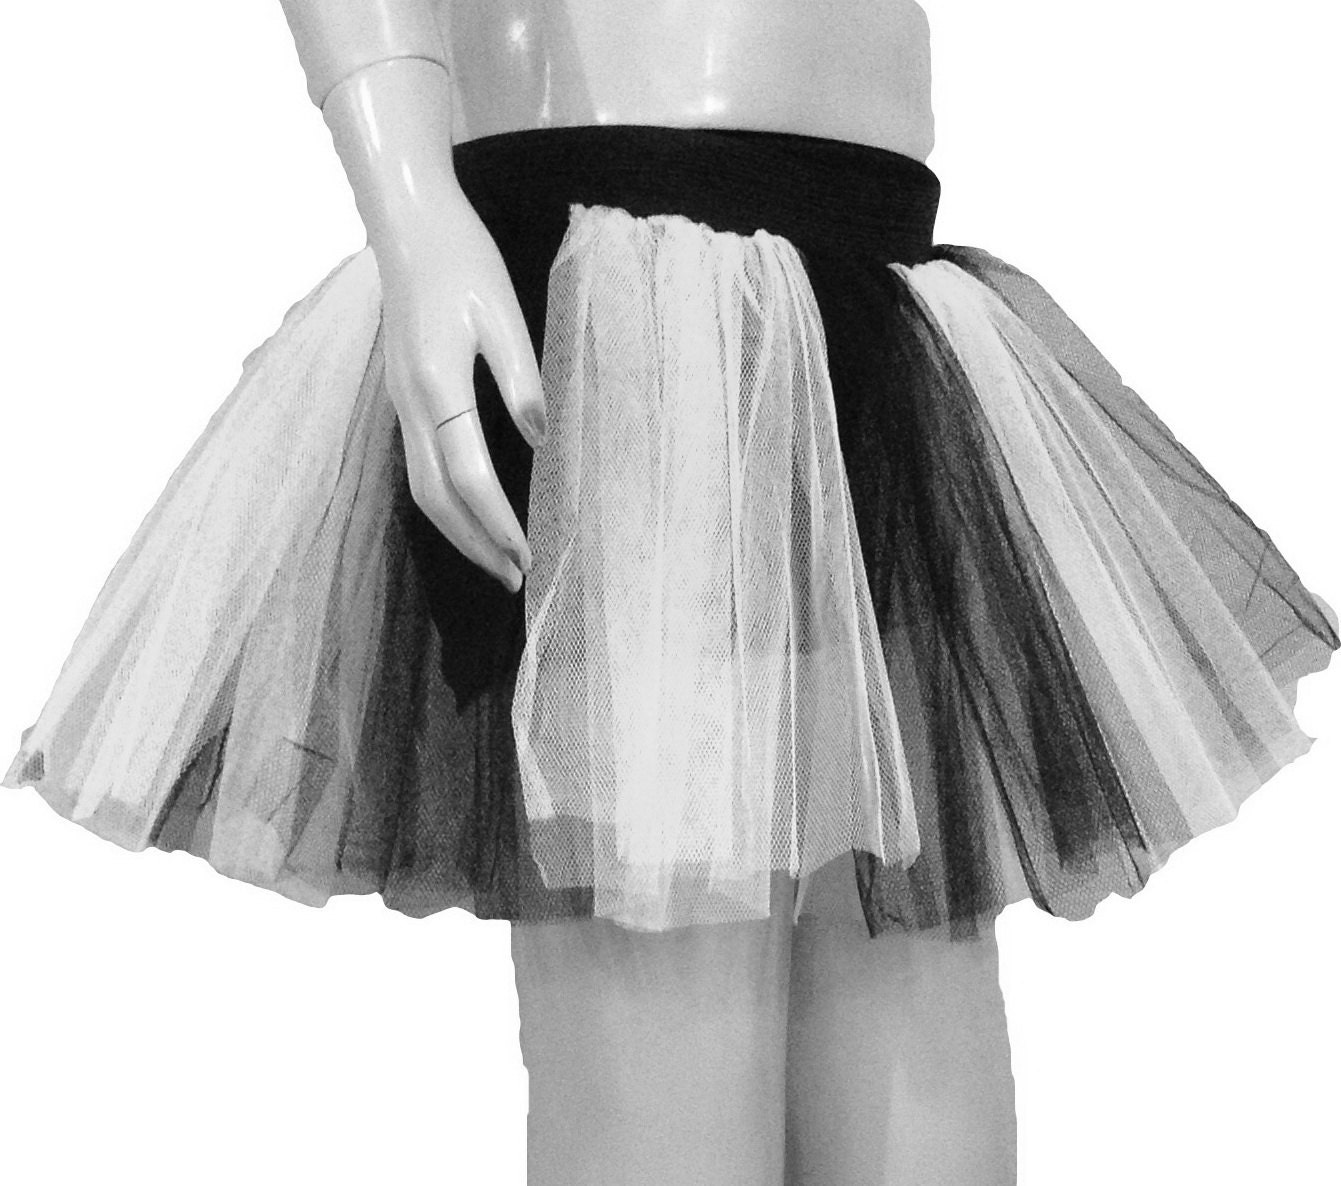 1 pieza multiusos blanco/negro falda tutú enagua hilo de cristal Lolita  medio vestido enagua falda deshuesada Halloween Navidad traje accesorio, Moda de Mujer